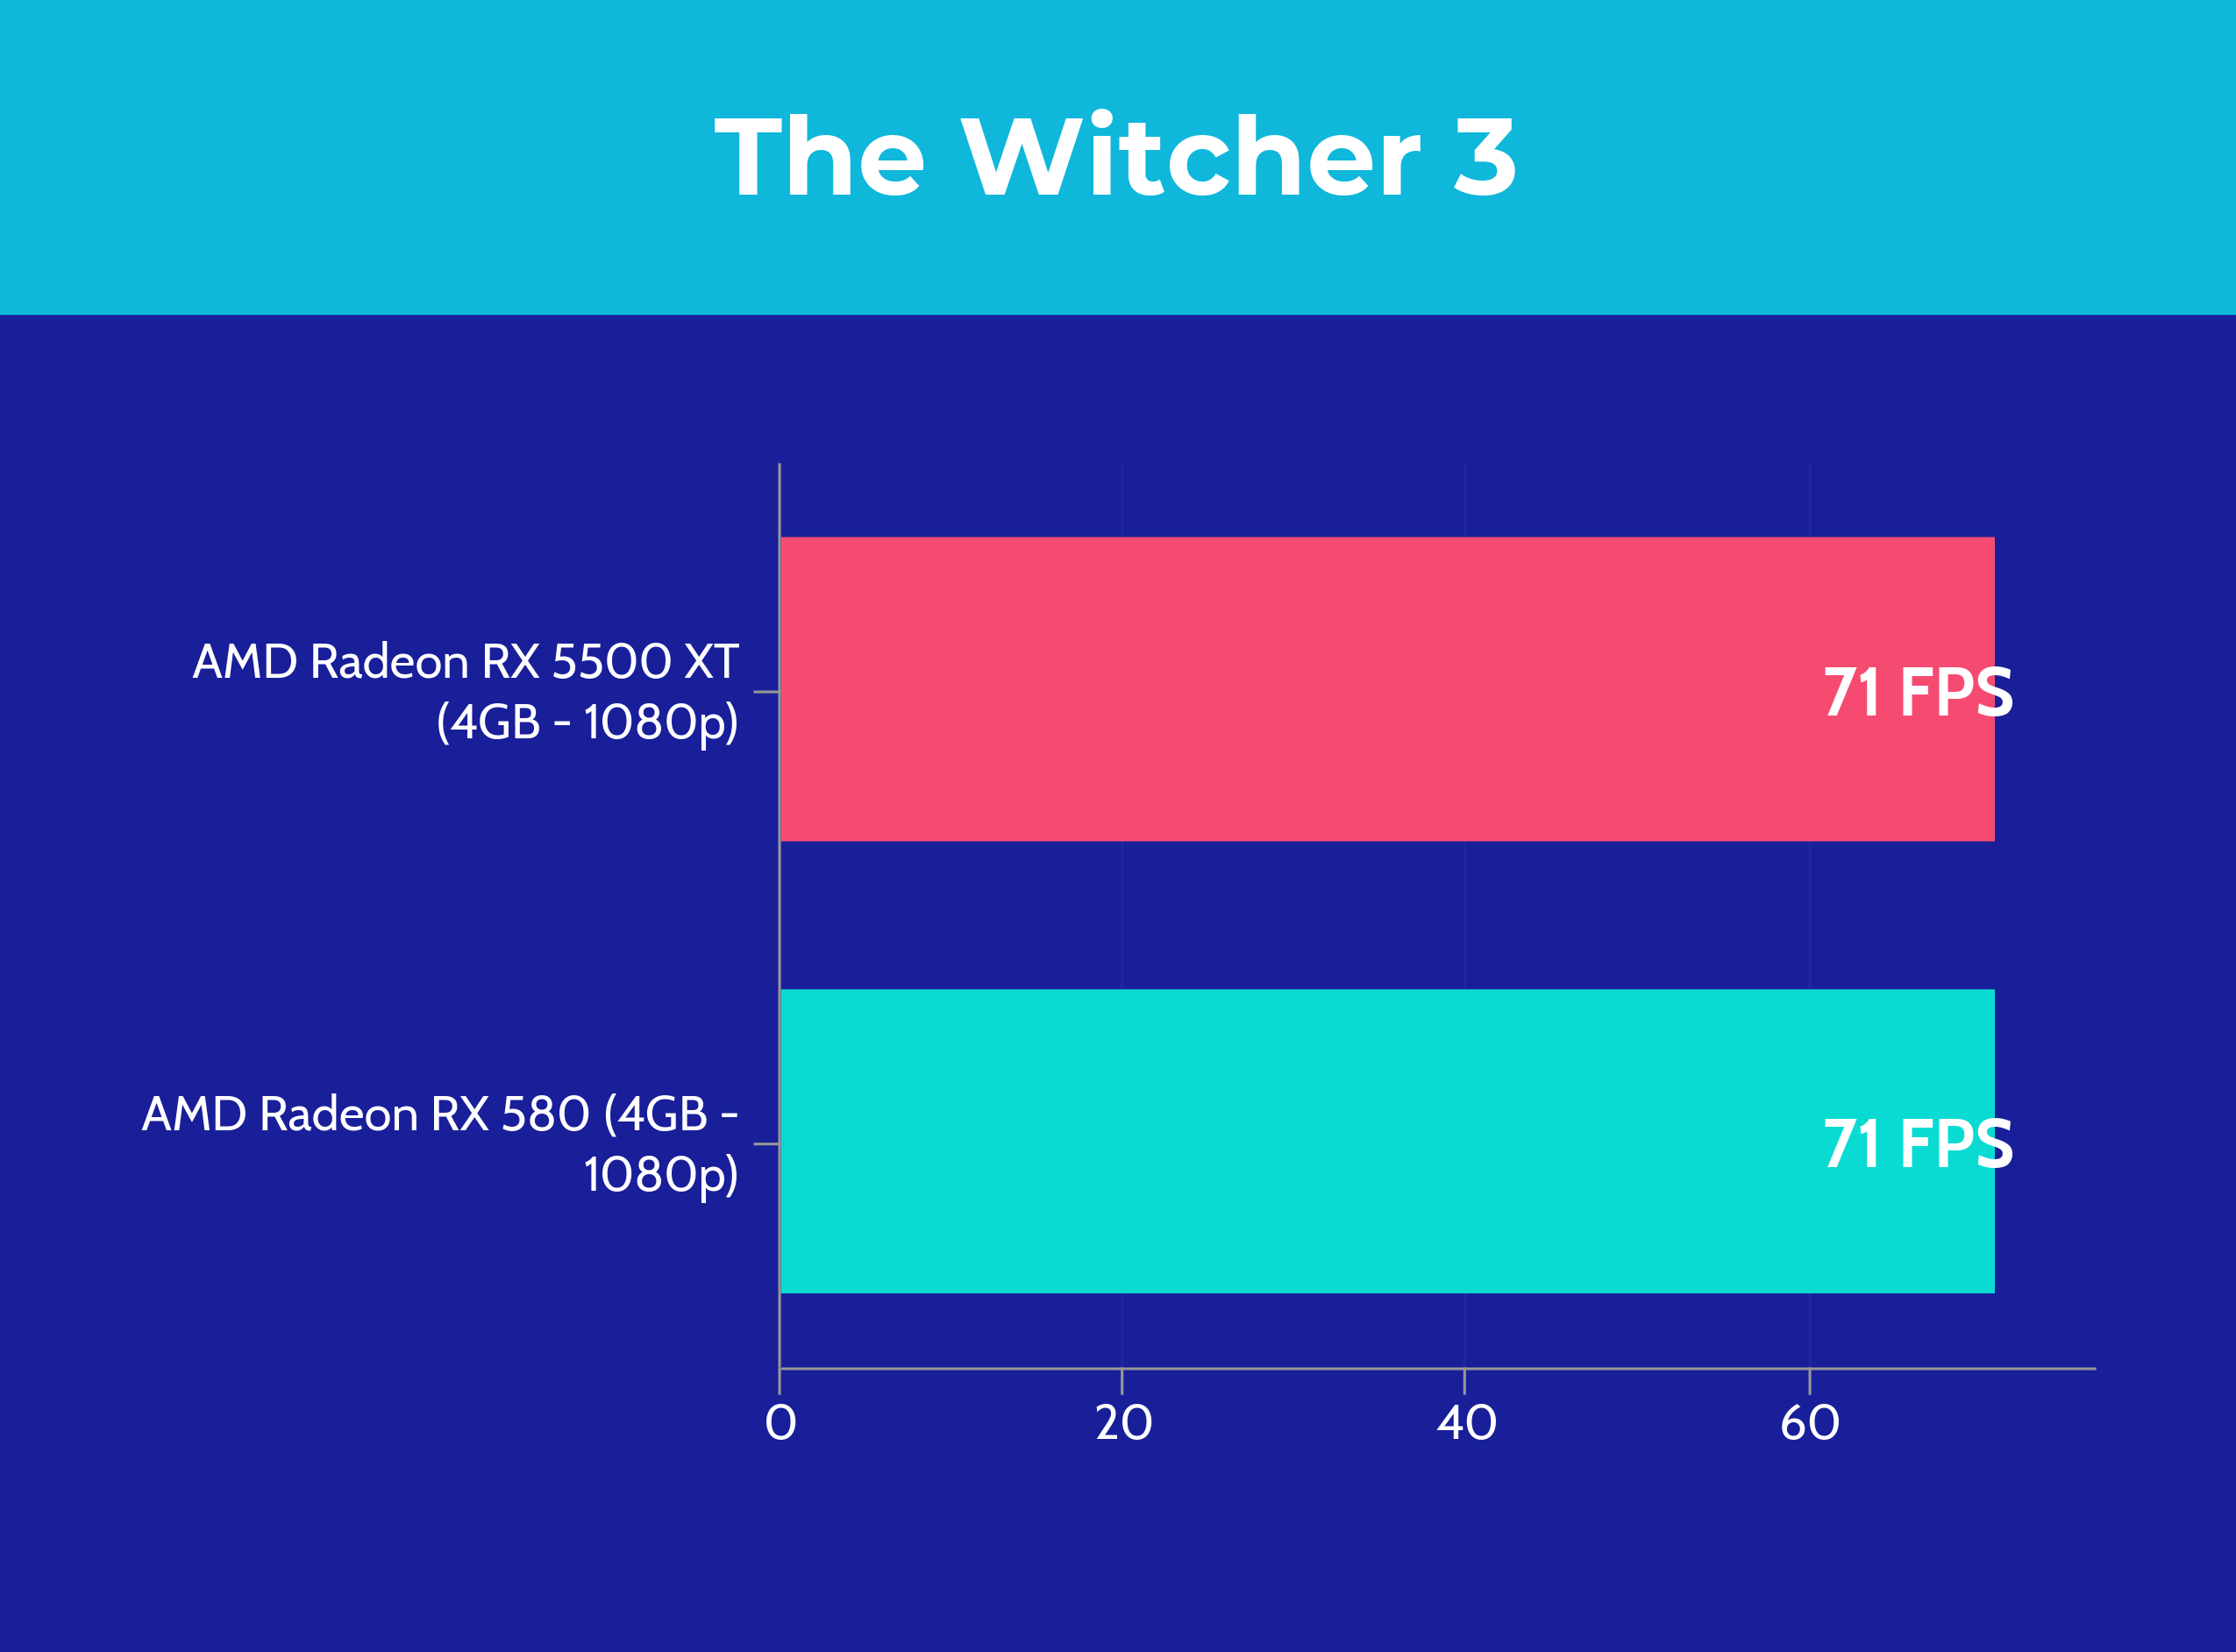 RX 5500 XT vs RX 580 - The Witcher 3